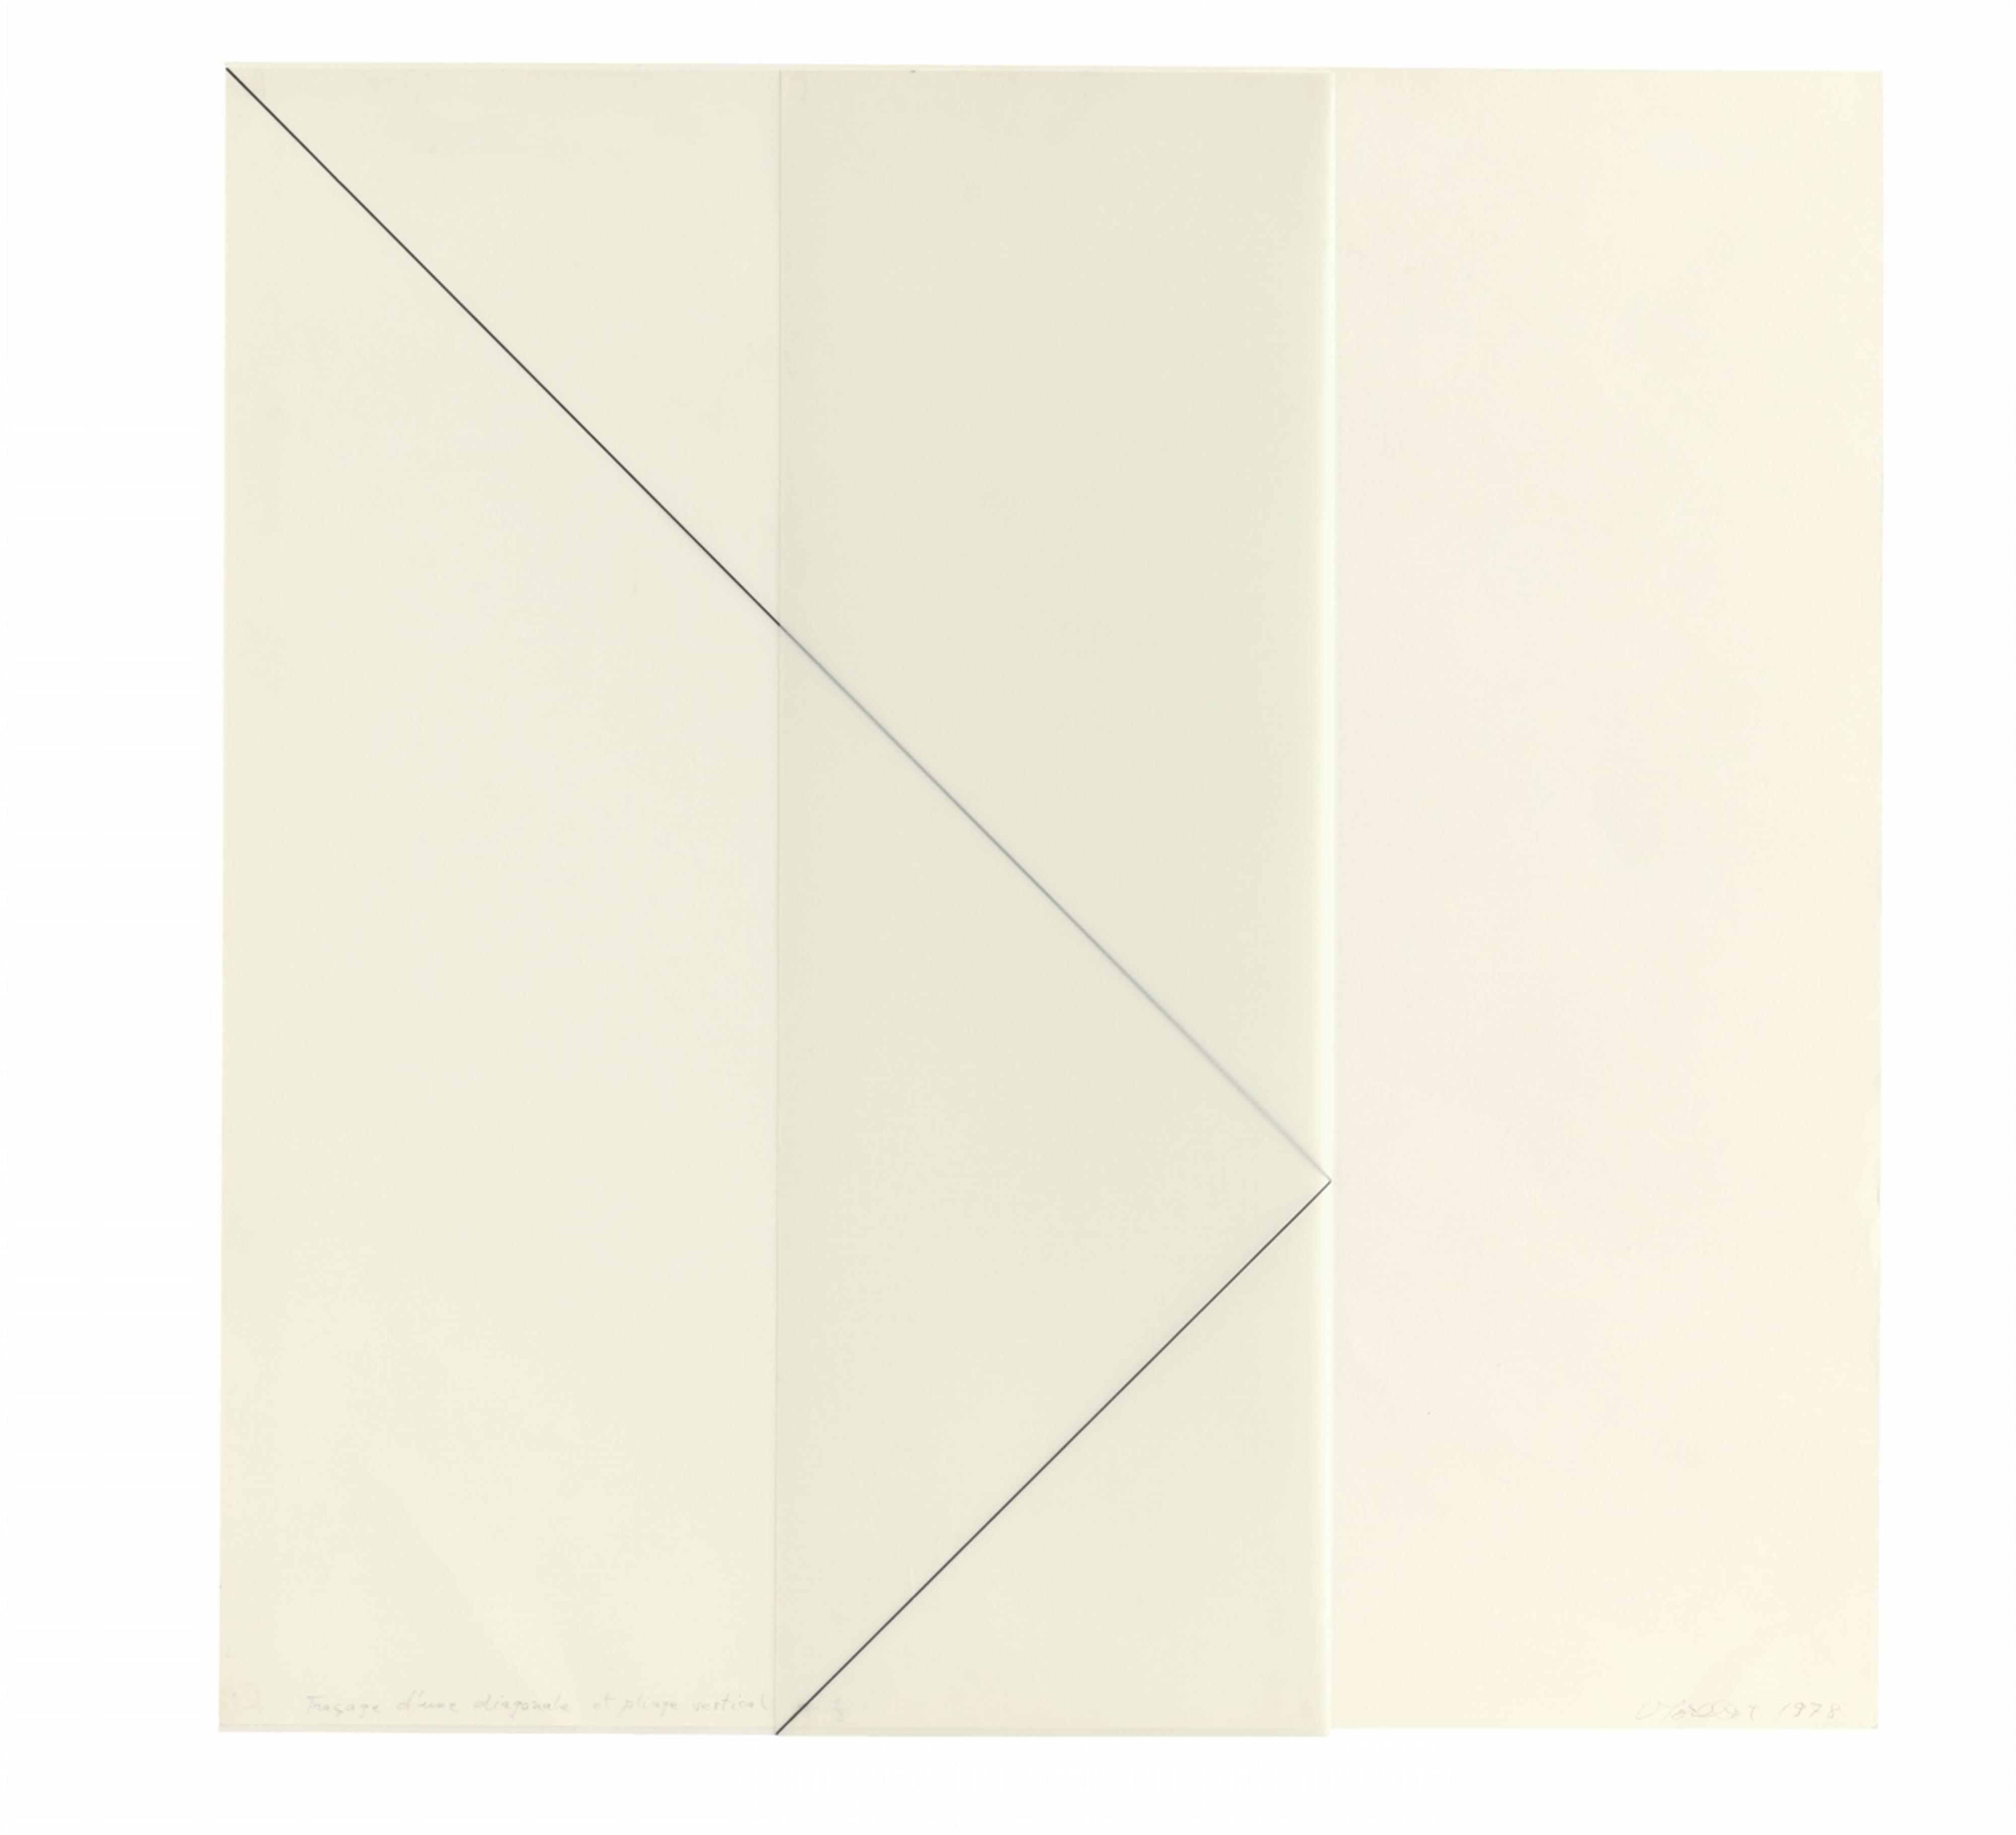 François Morellet - Traçage d’une diagonale sur un carré de calque et pliage vertical au 1/3 - image-1